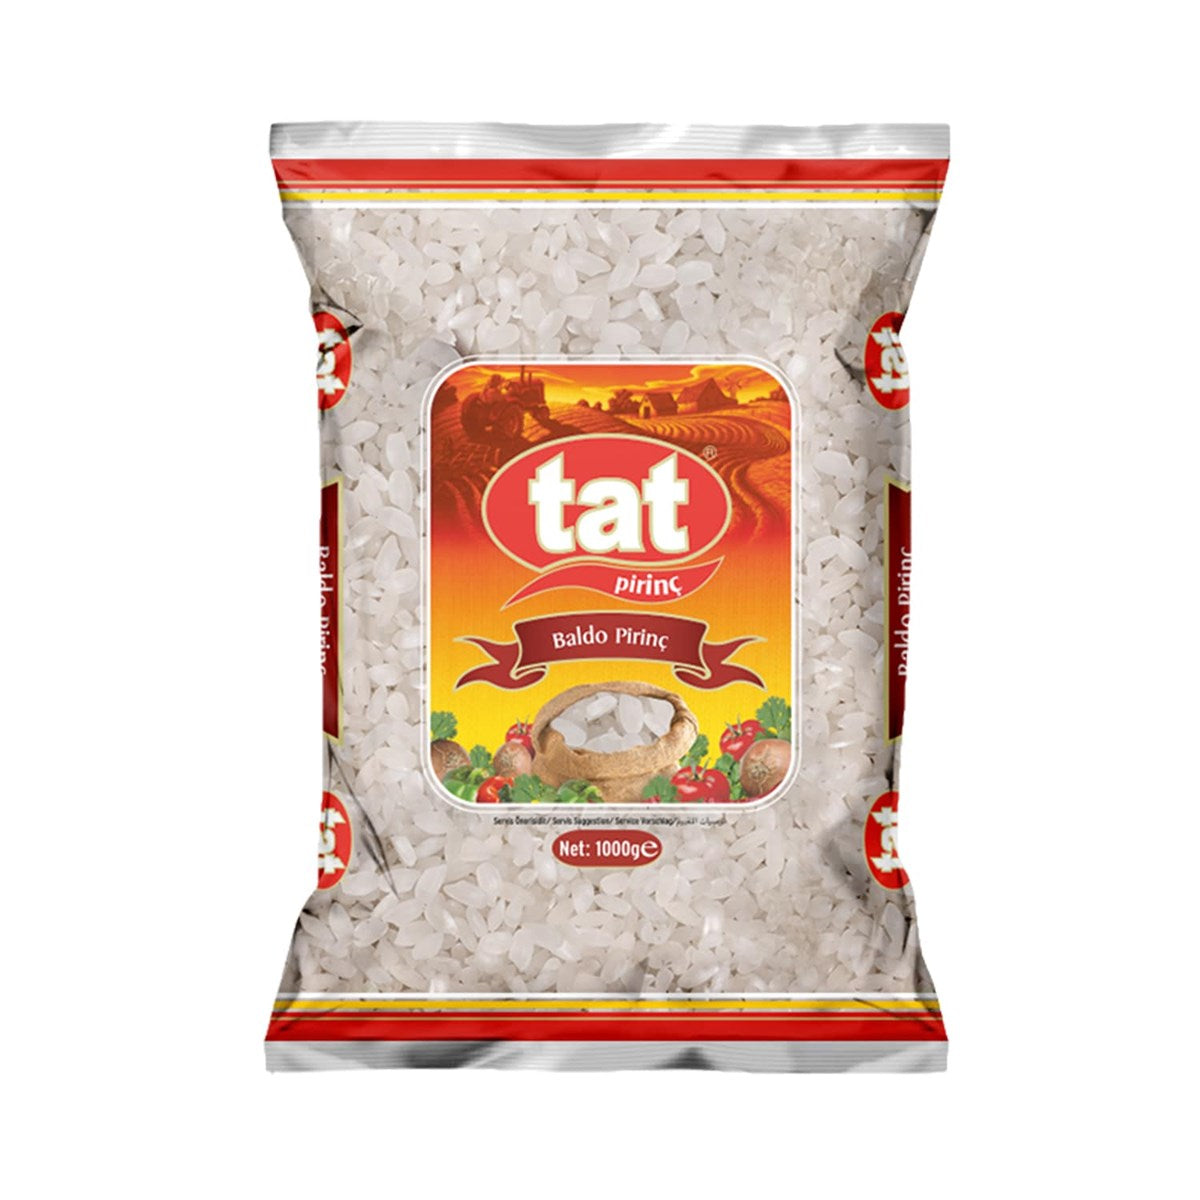 Tat Baldo Pirinc / Baldo Rice 1 Kg